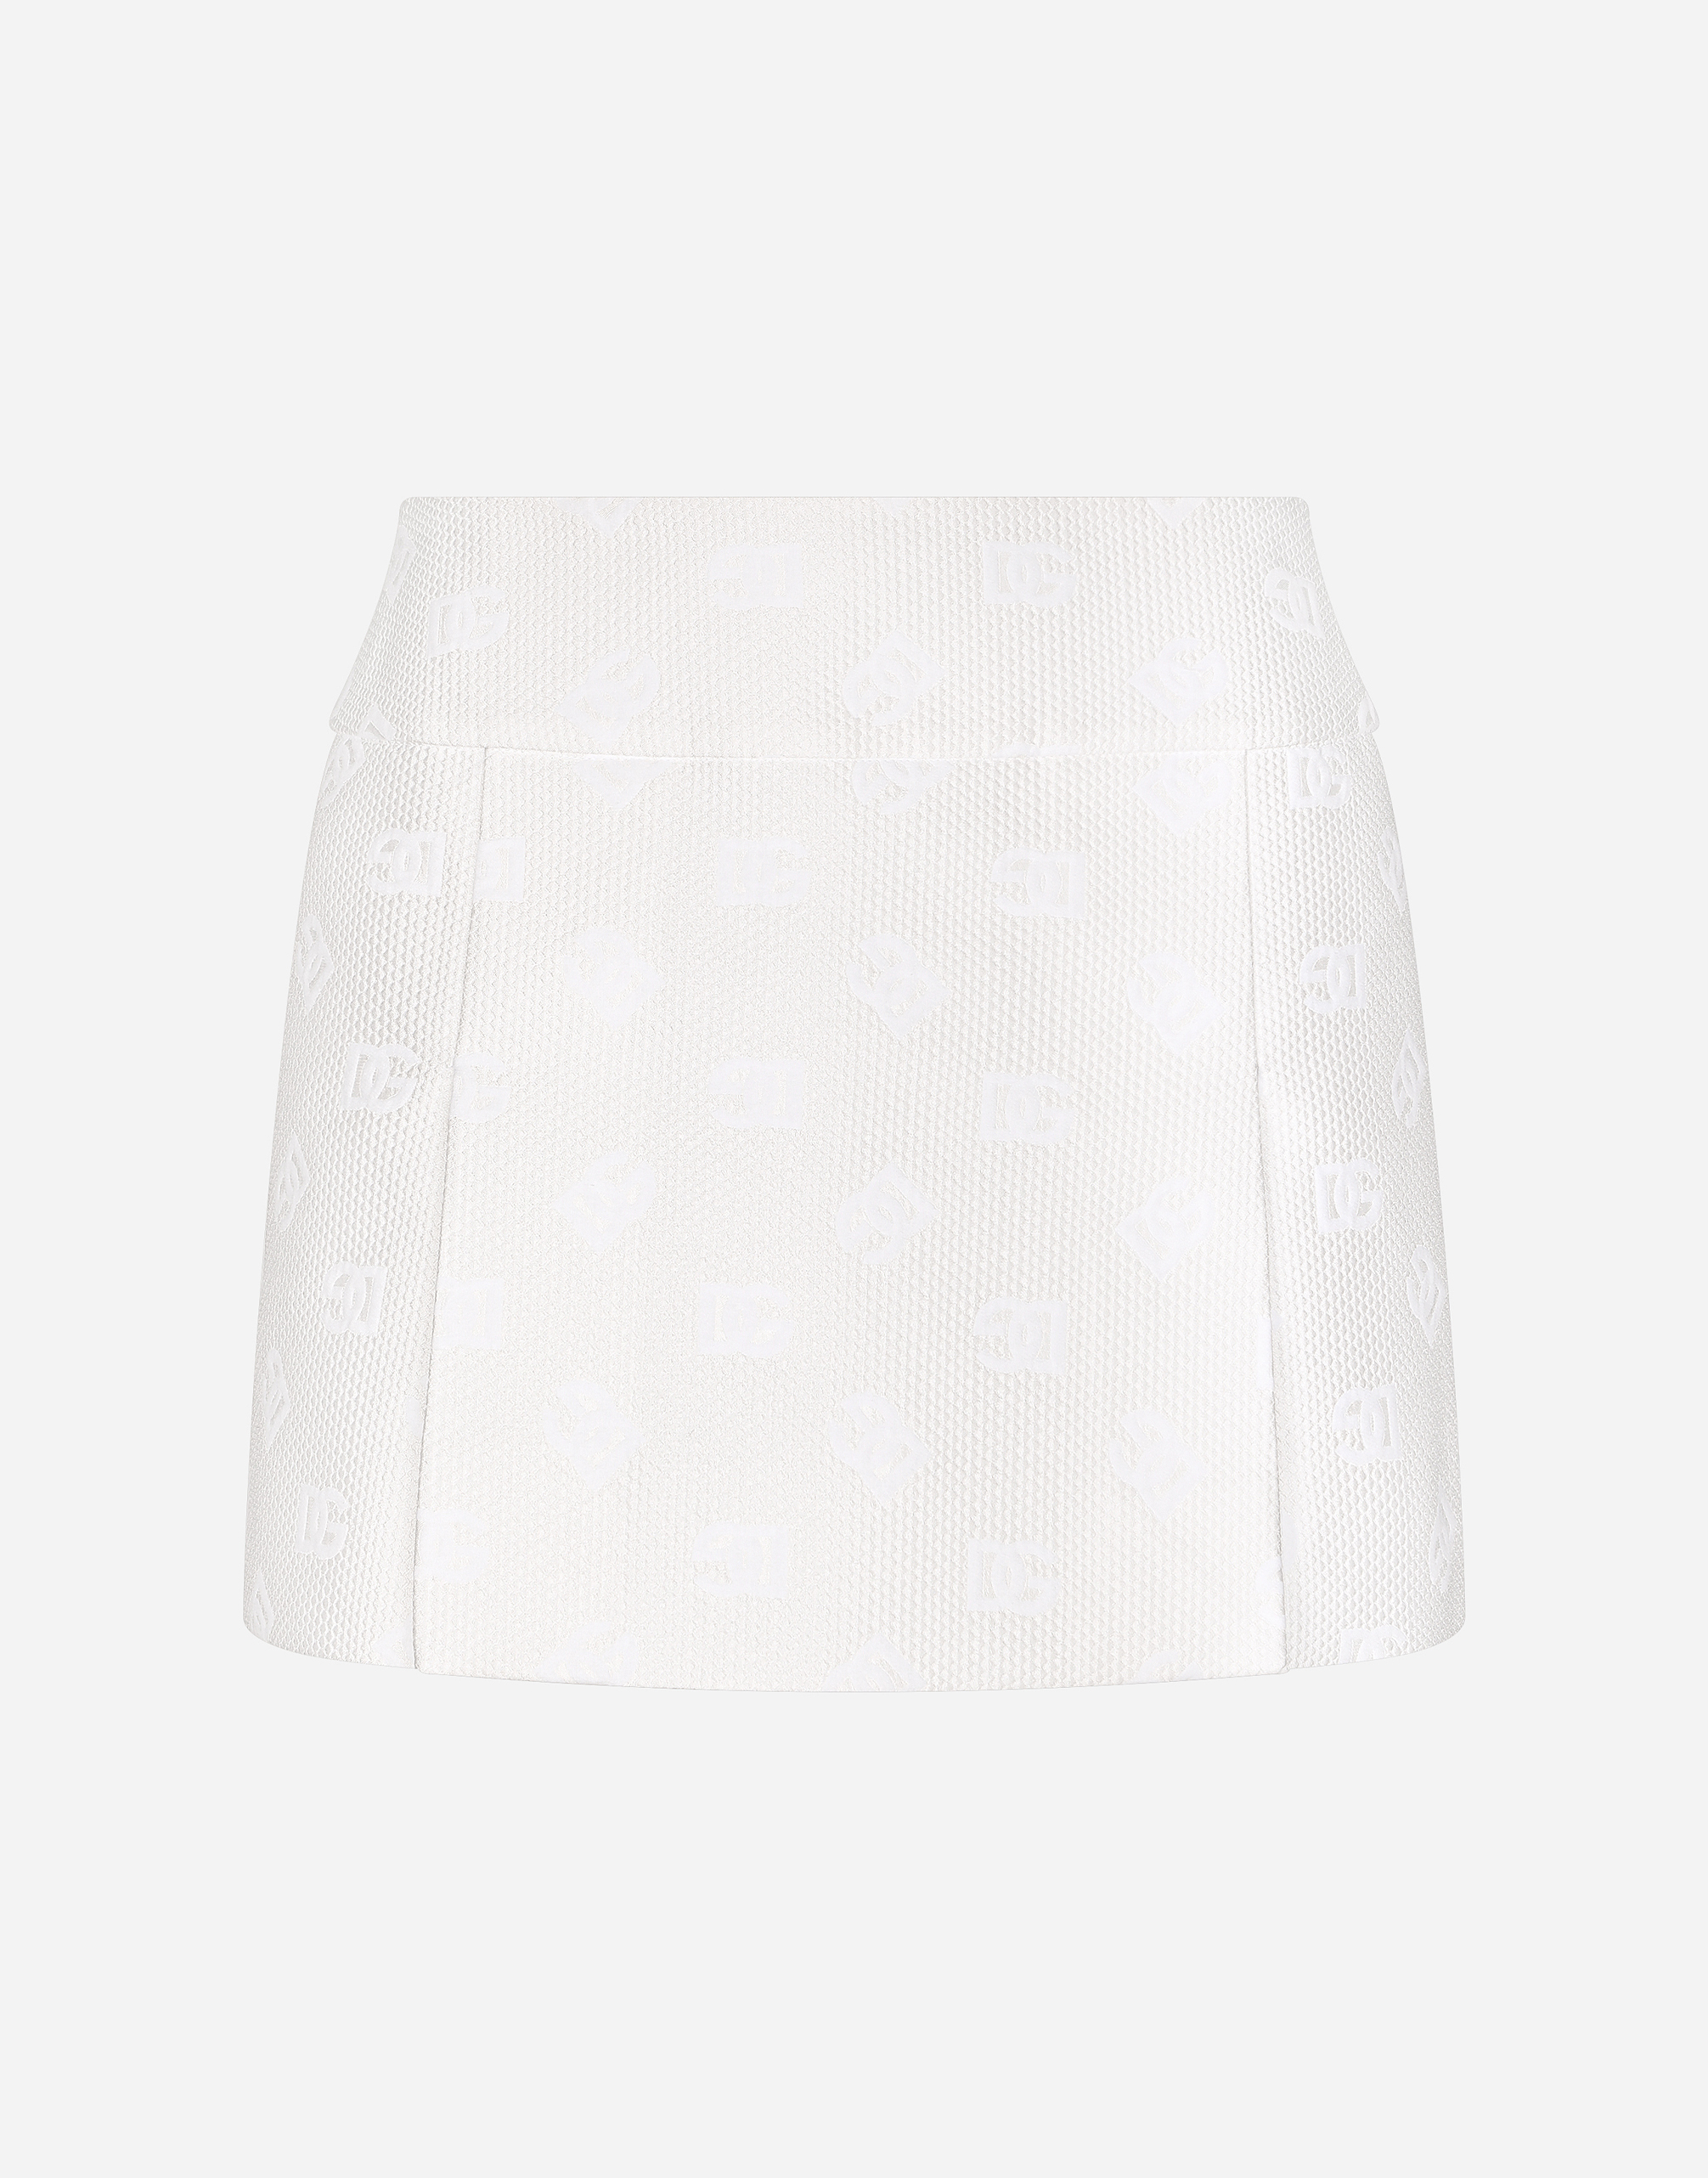 Dolce & Gabbana Jacquard Miniskirt With All-over Dg Logo In White